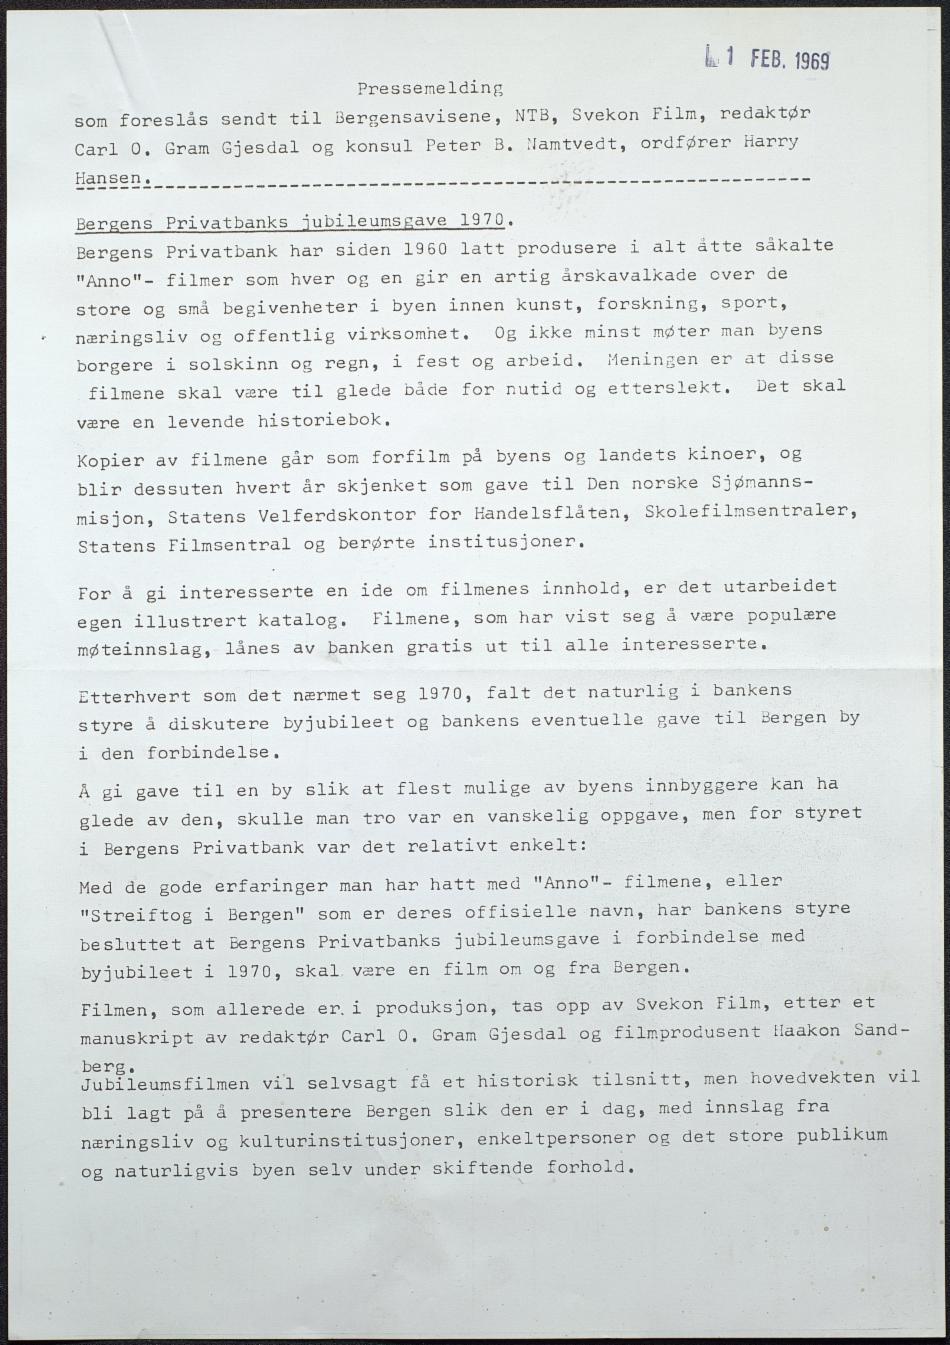 Pressemelding fra Bergens Privatbank vedrørende deres gave til byen, Svekonfilmen «Bergen – et møtested for mennesker», datert 1. februar 1969. Les hele pressemeldingen i bunnen av artikkelen.